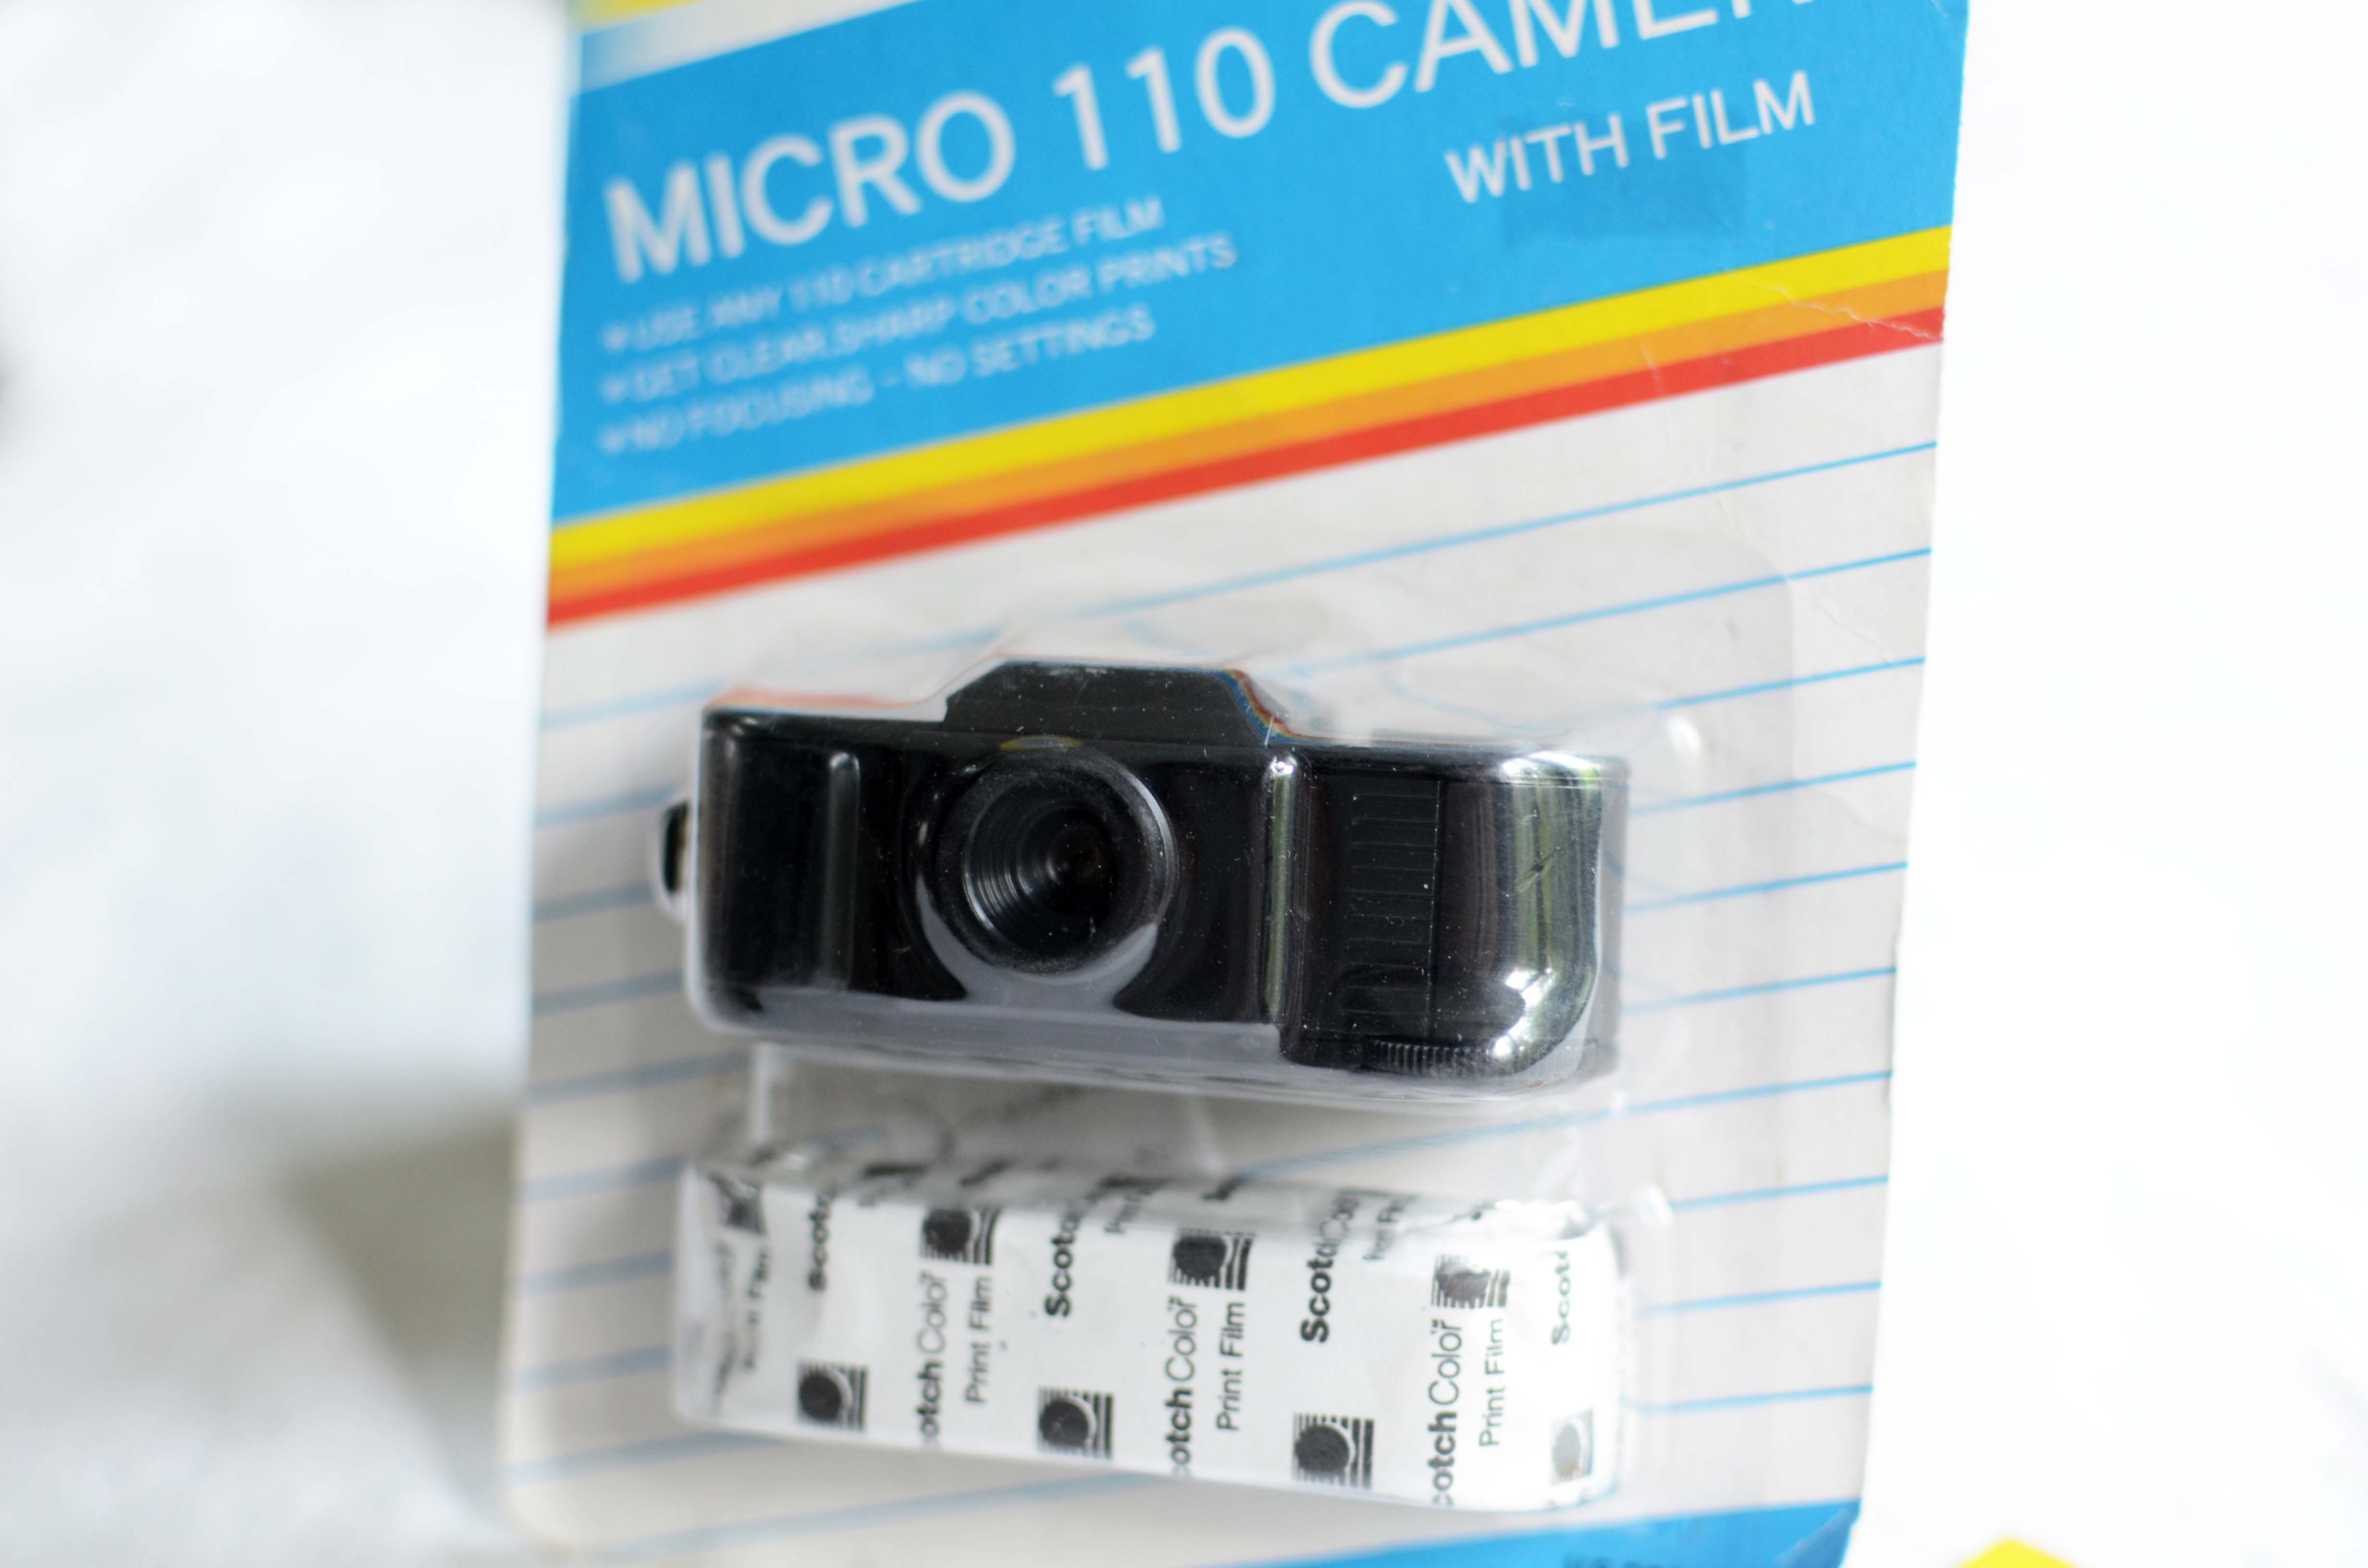 กล้องฟิล์ม 110 มี 3 สี